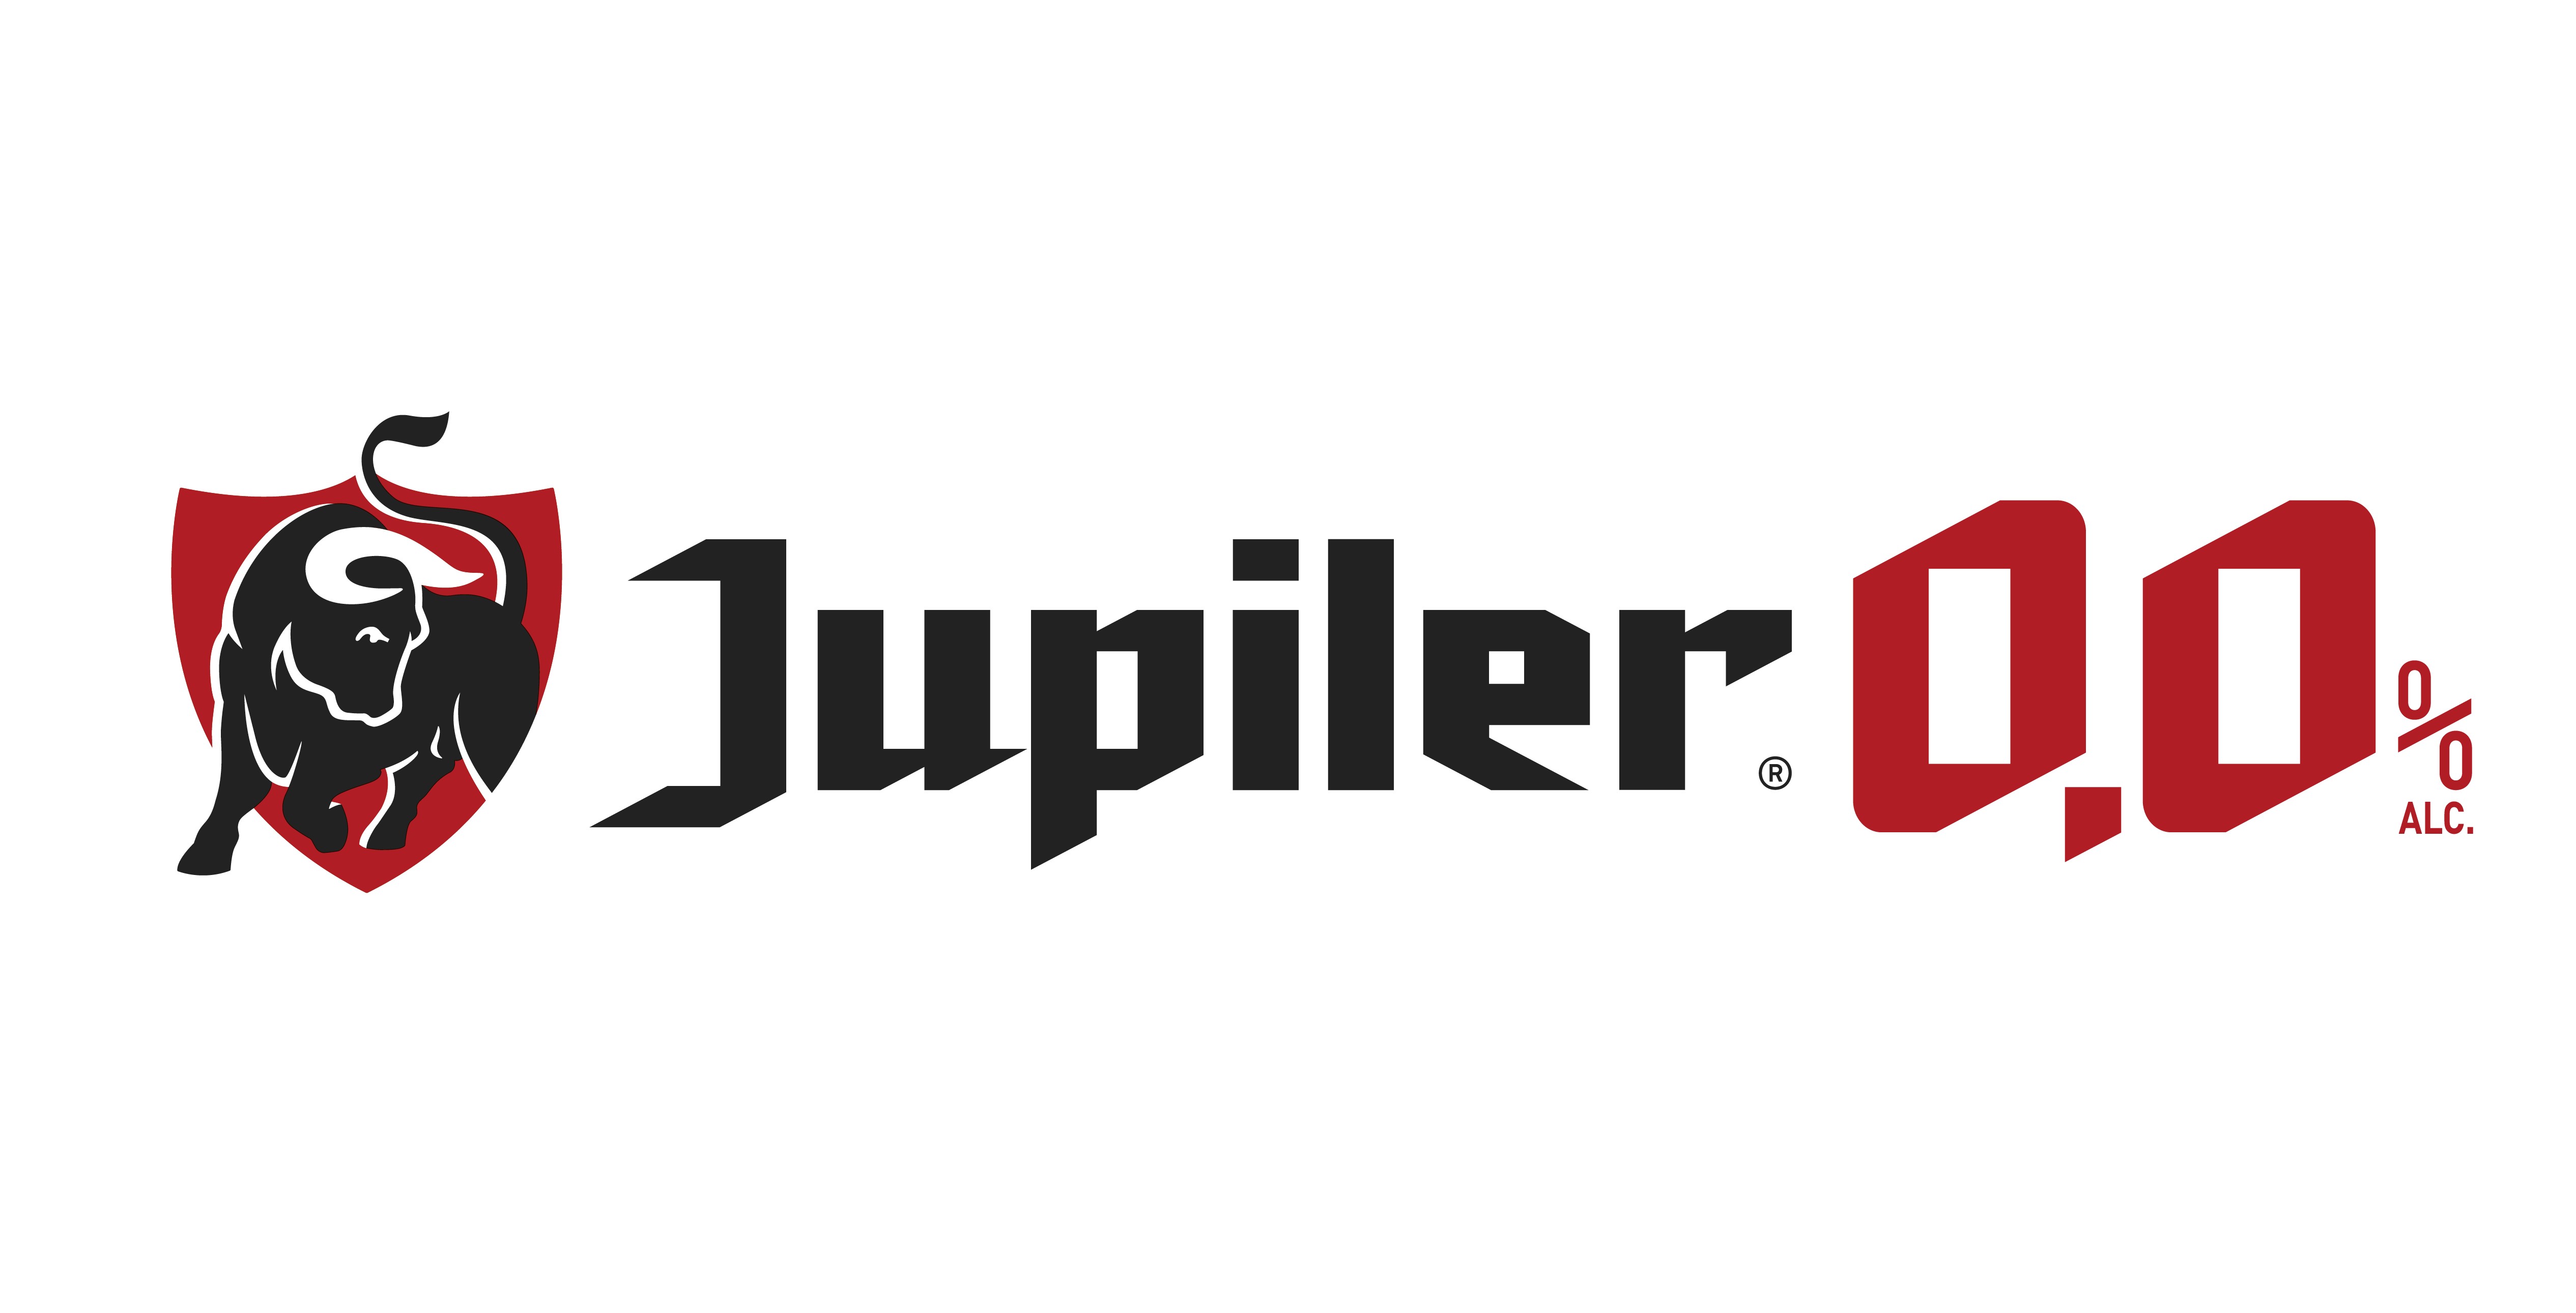 Juplier 0.0 logo